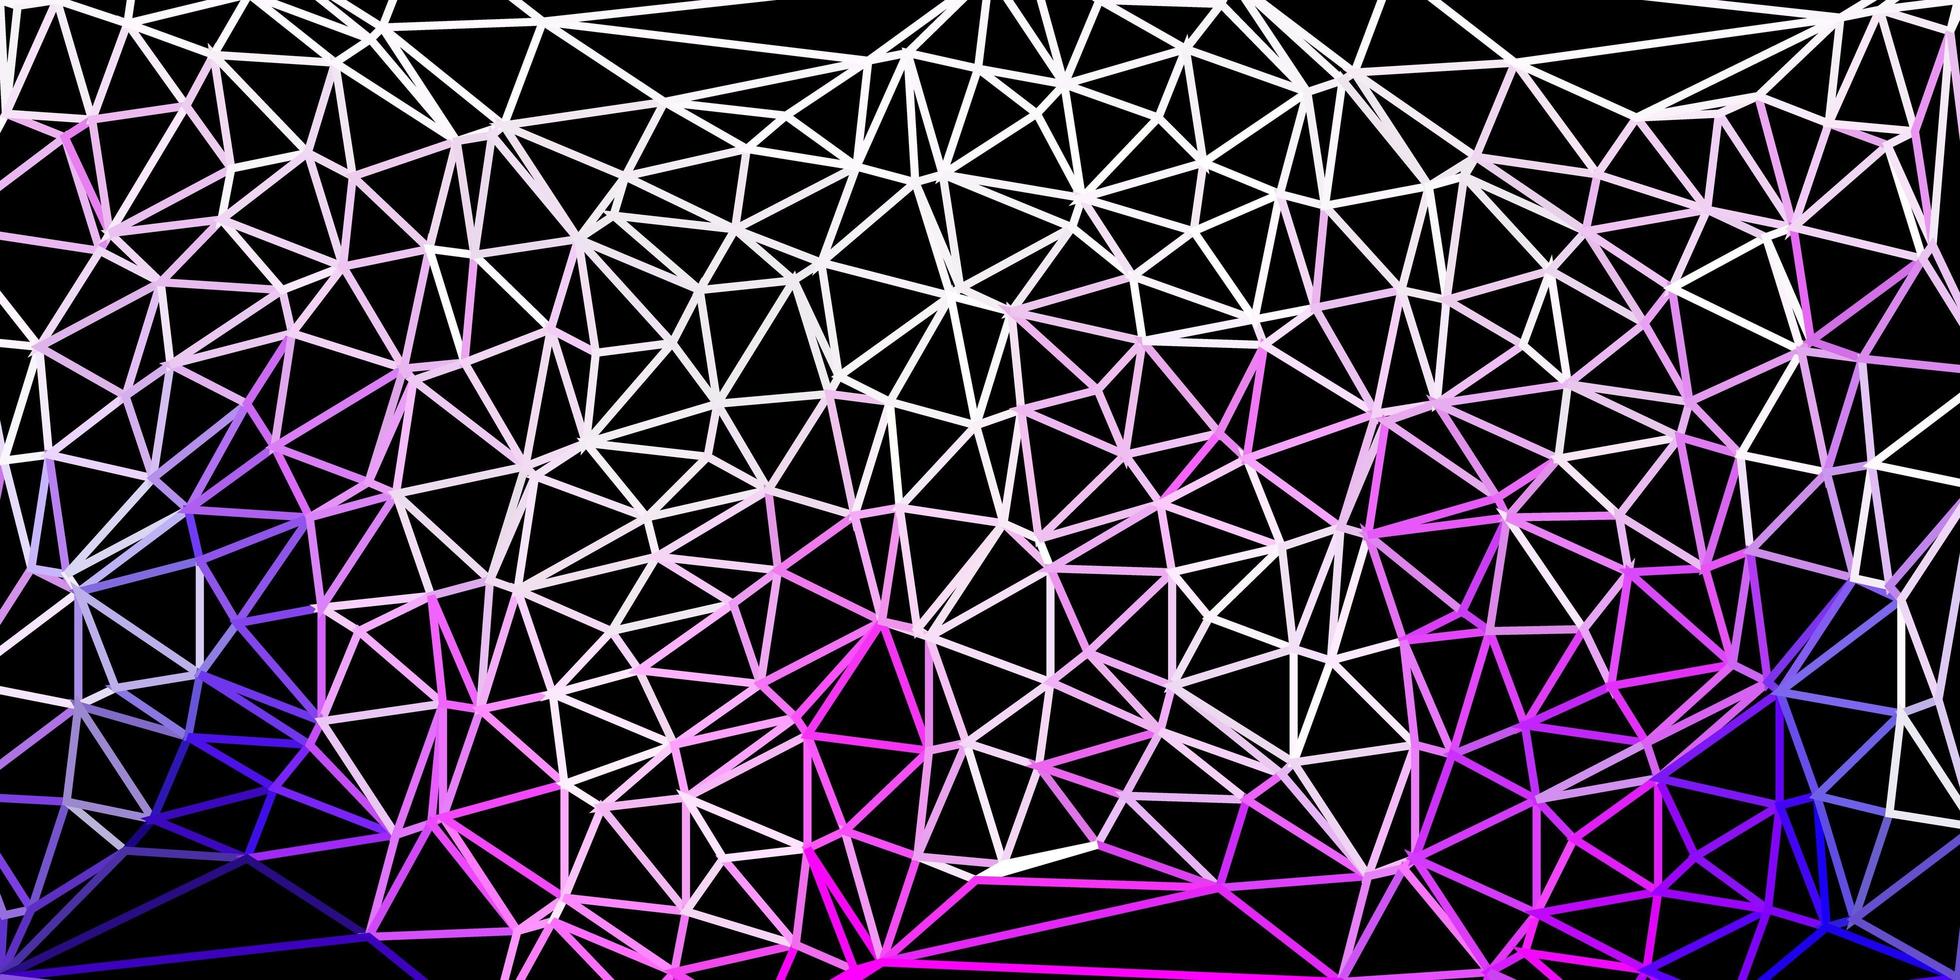 textura de triângulo poli vetor roxo e rosa claro.